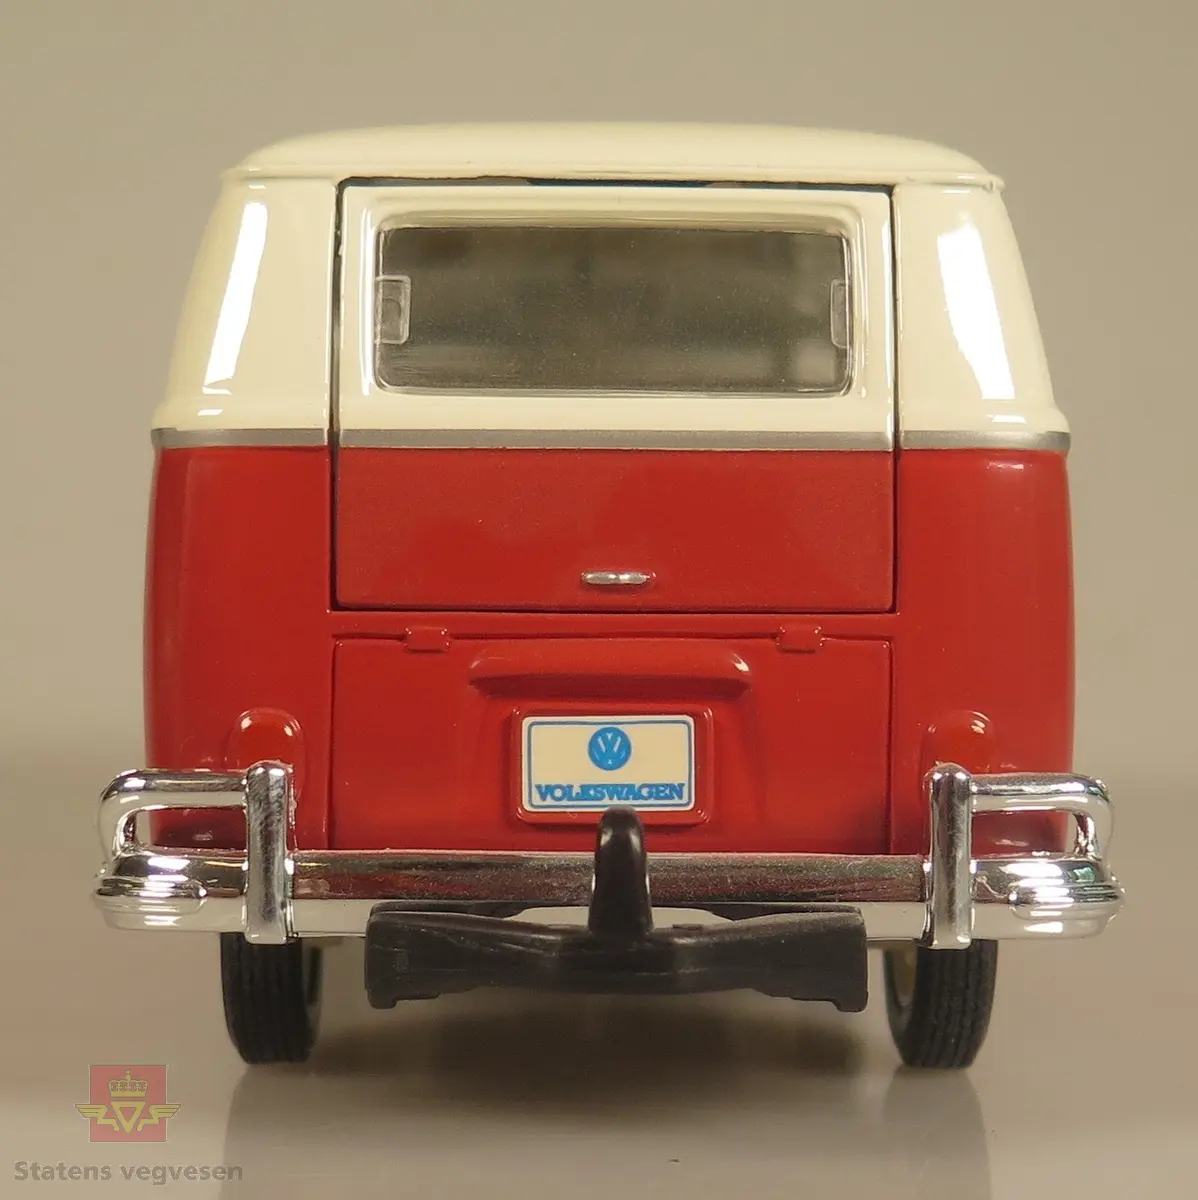 Primært rød og sekundært hvit modellbil laget av metall og er detaljert. Den er utstyrt med side-dører som kan åpnes og lukkes. Skala: 1:24
